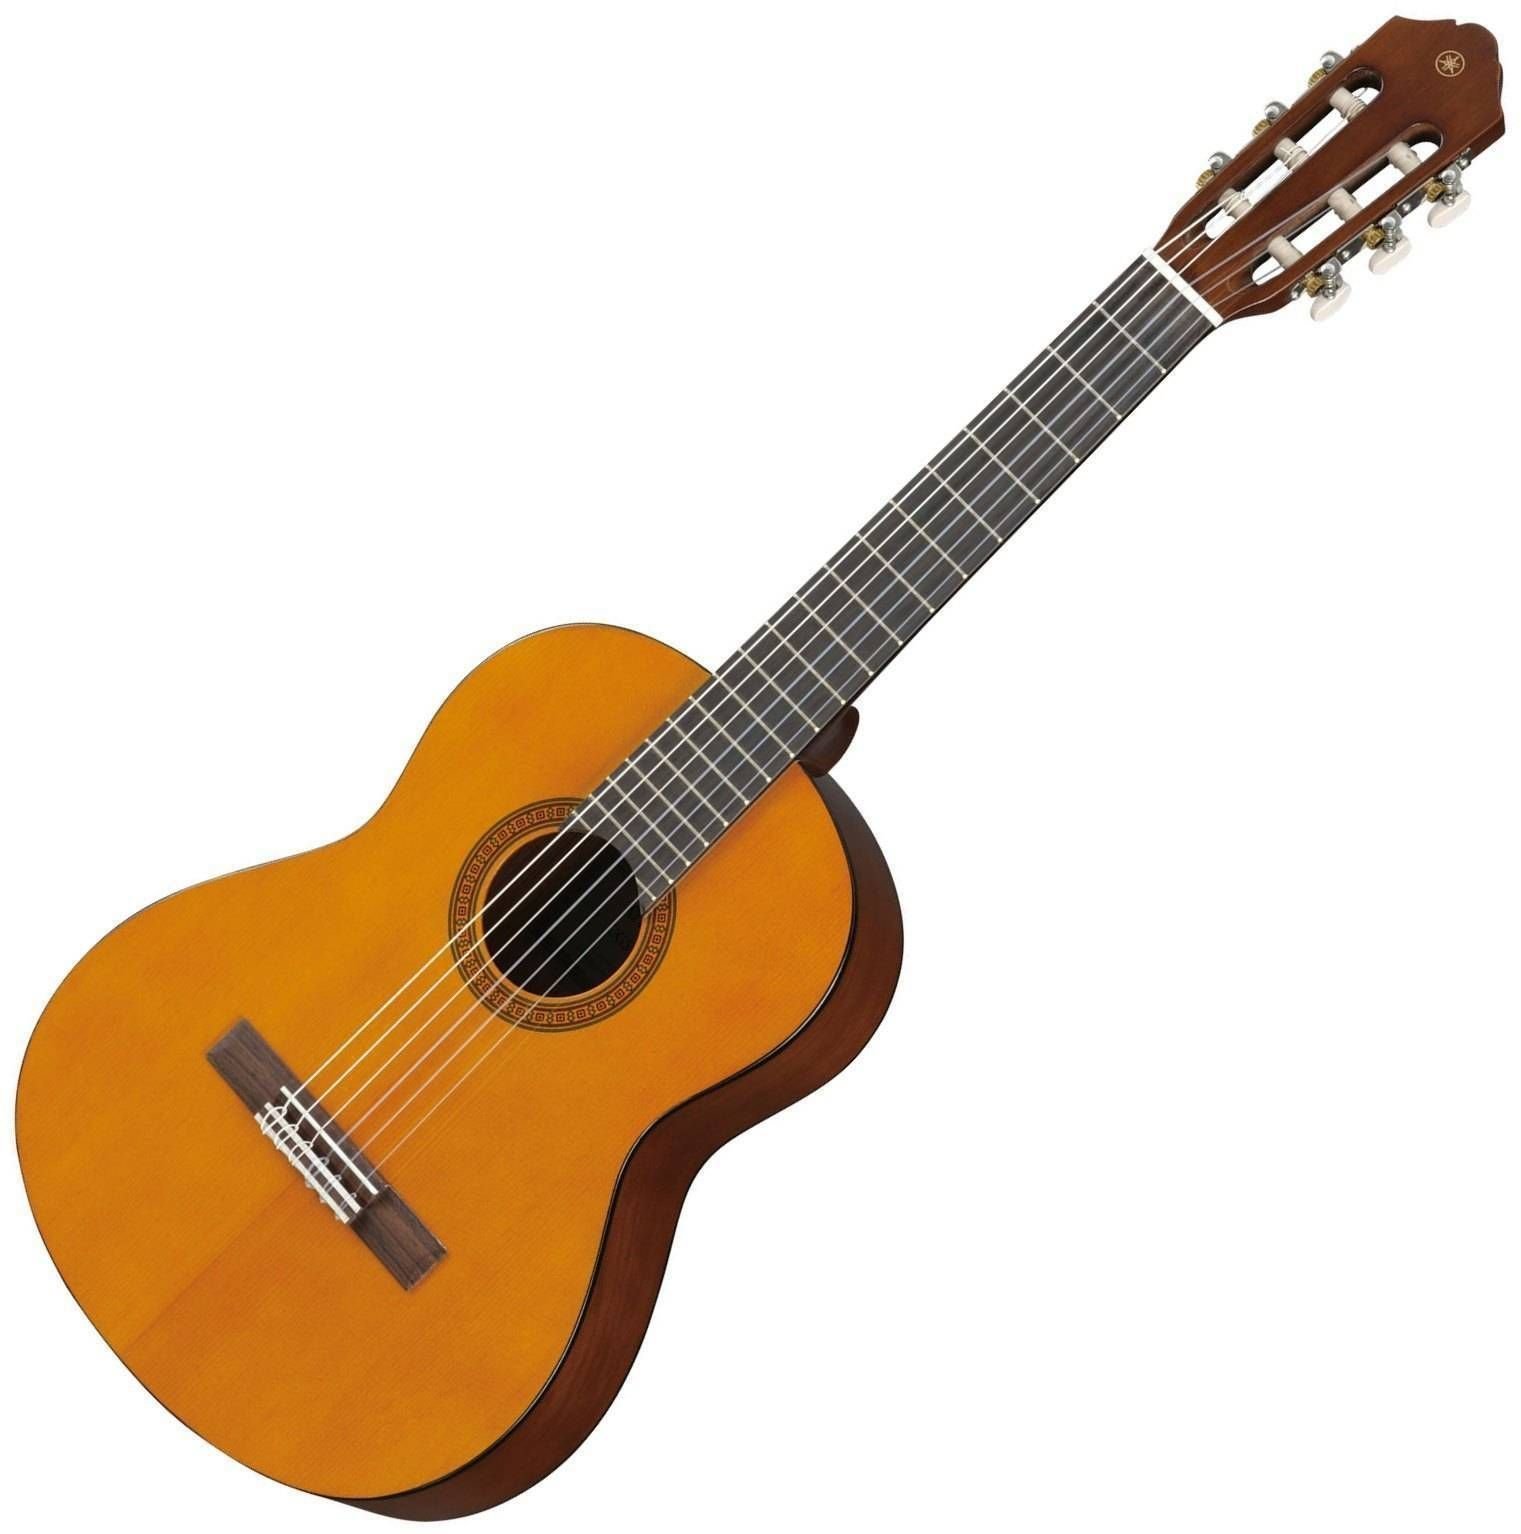 Polovična klasična kitara za otroke Yamaha CGS102AII 1/2 Natural